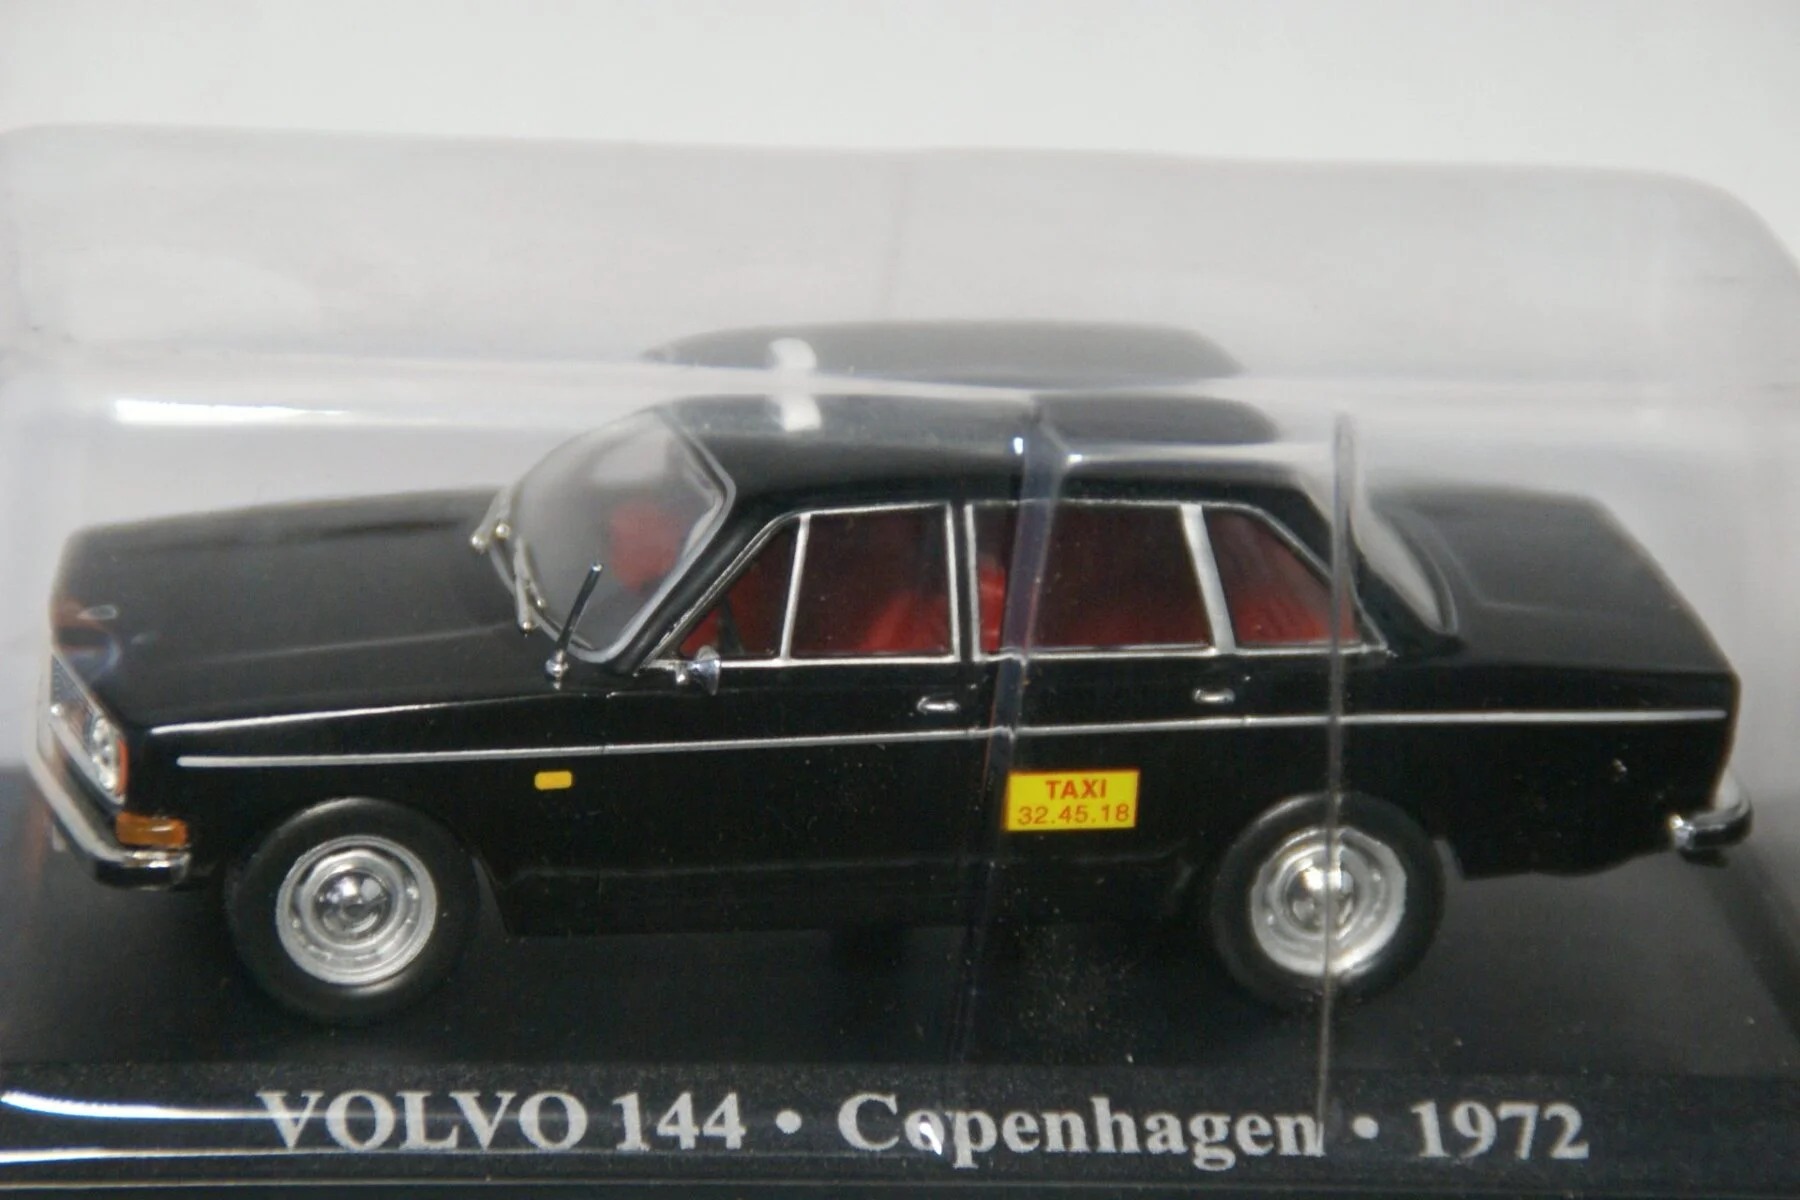 DSC03123 miniatuur 1972 Volvo 144 Copenhagen TAXI 1op43 MB